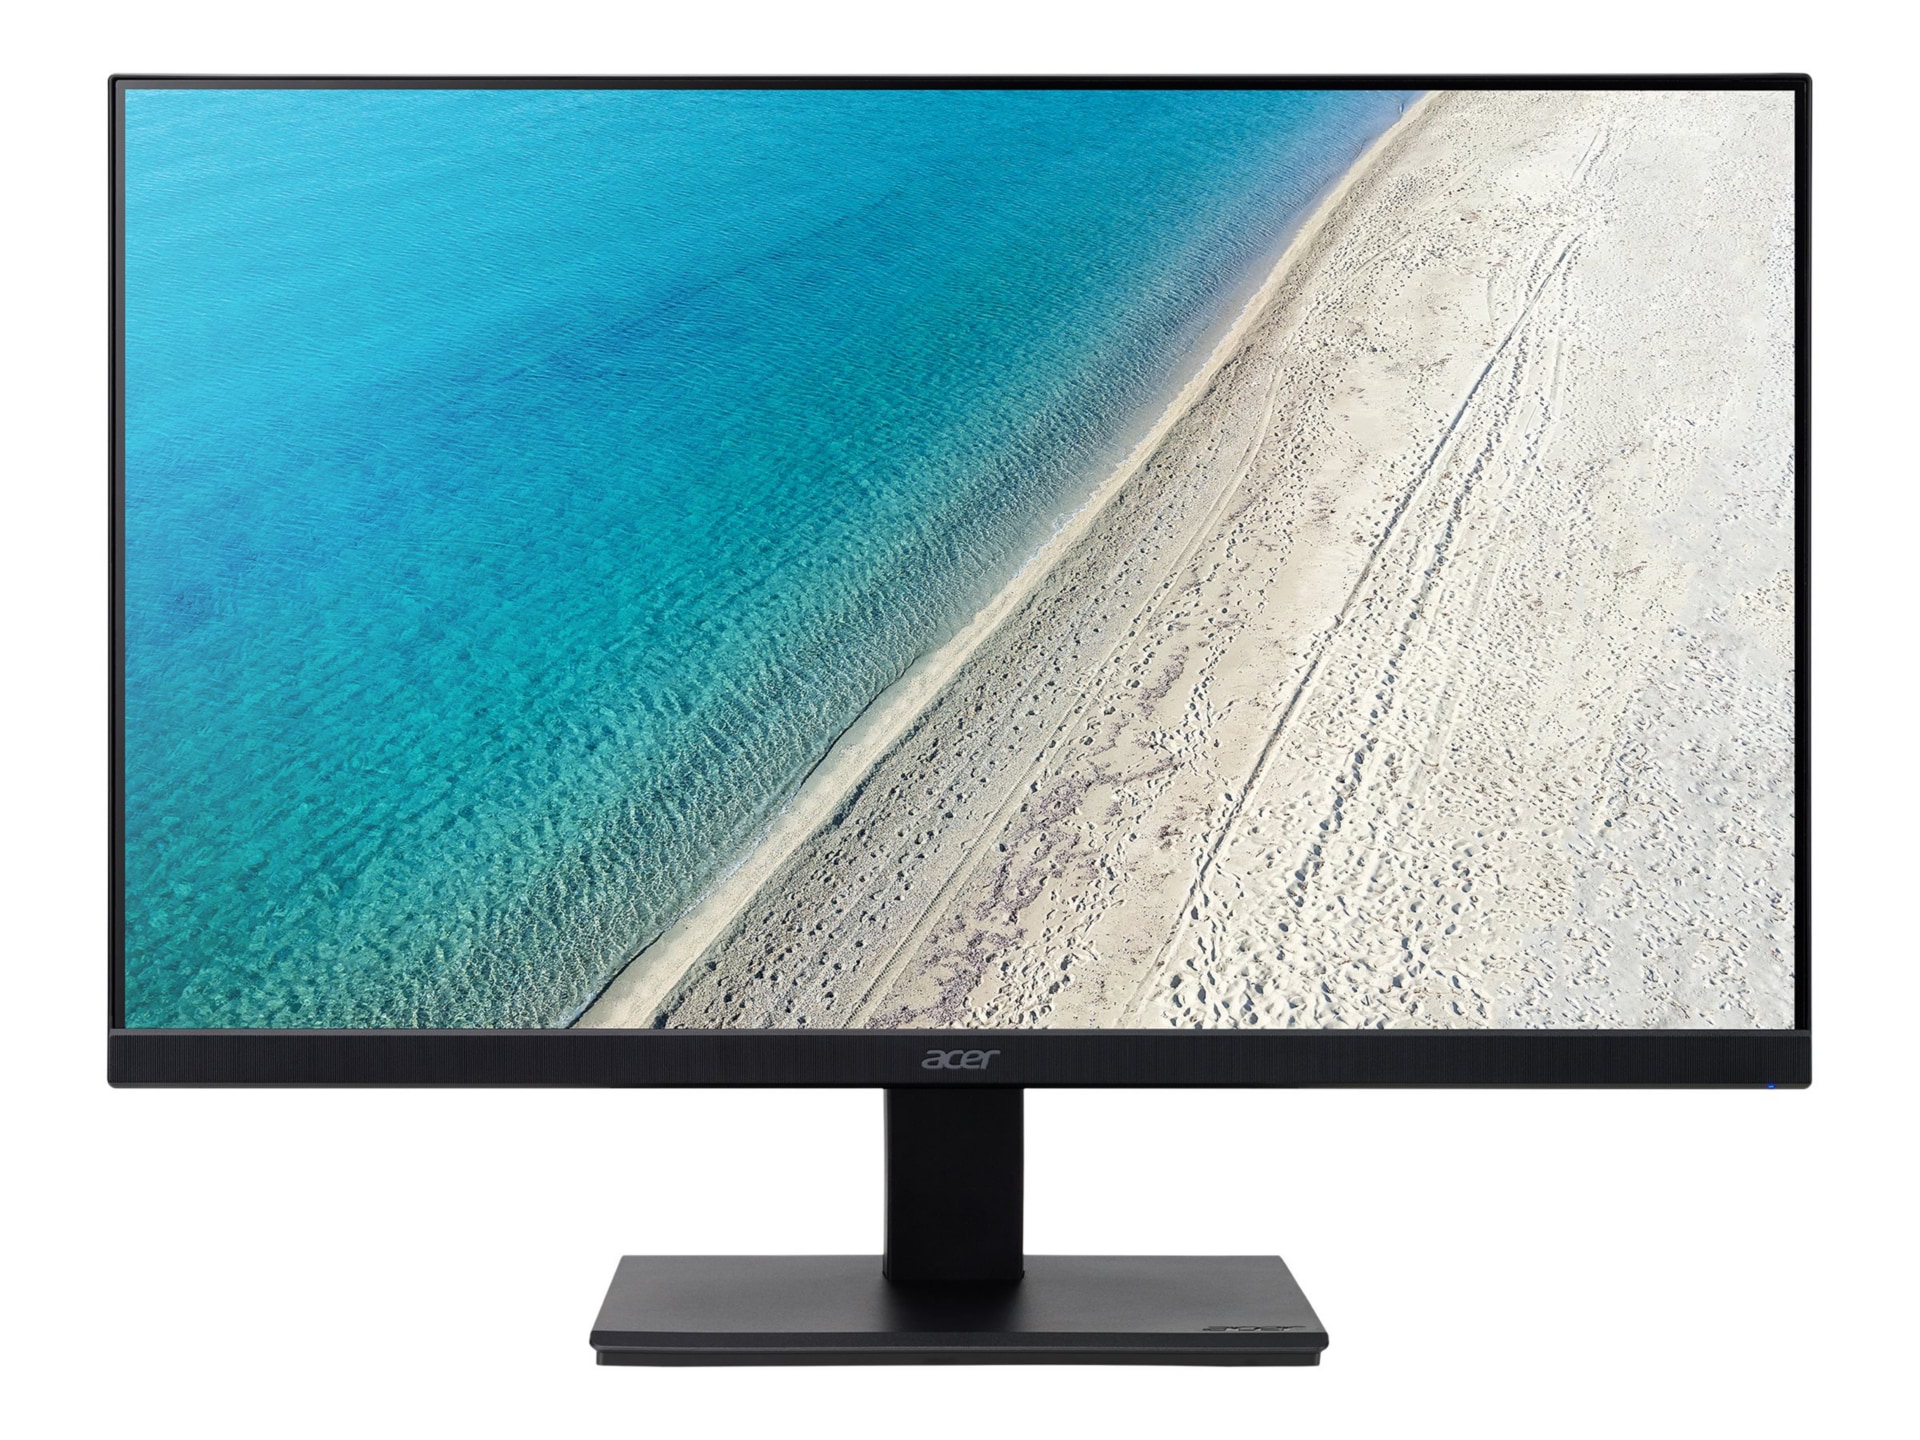 Acer Vero V227Q E3bmipx - V7 Series - LED monitor - Full HD (1080p) - 22"